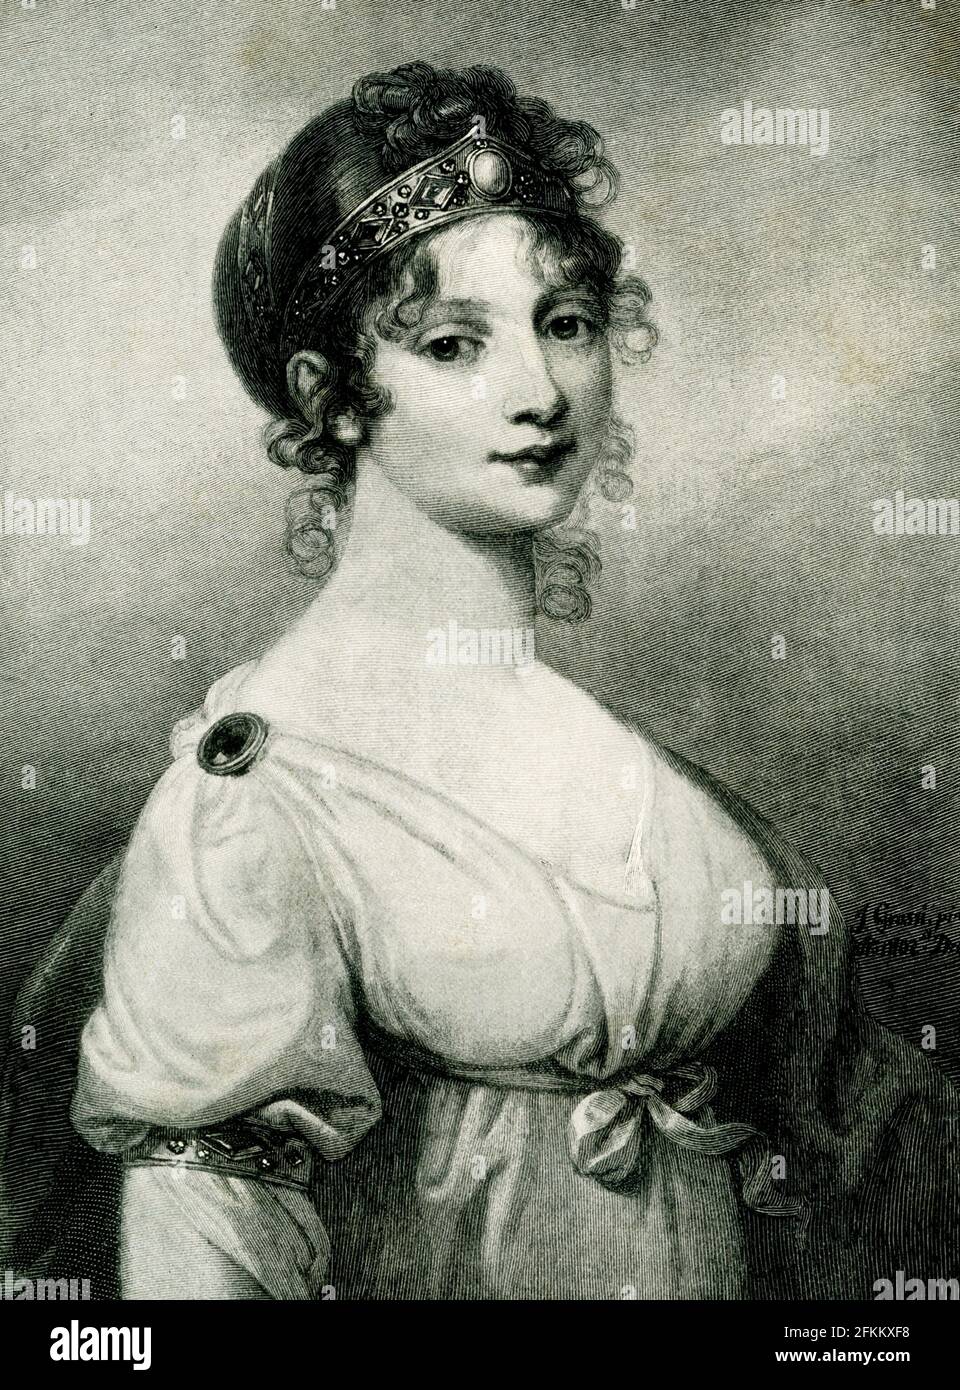 La légende de 1896 se lit comme suit : « la reine Louisa de Prusse d’après la peinture au musée Hohenzollern de Berlin gravé par Varley en demi-ton ». Louisa Ulrika de Prusse fut reine de Suède de 1751 à 1771 comme consort du roi Adolf Frederick. Elle était reine mère pendant le règne du roi Gustav III Banque D'Images